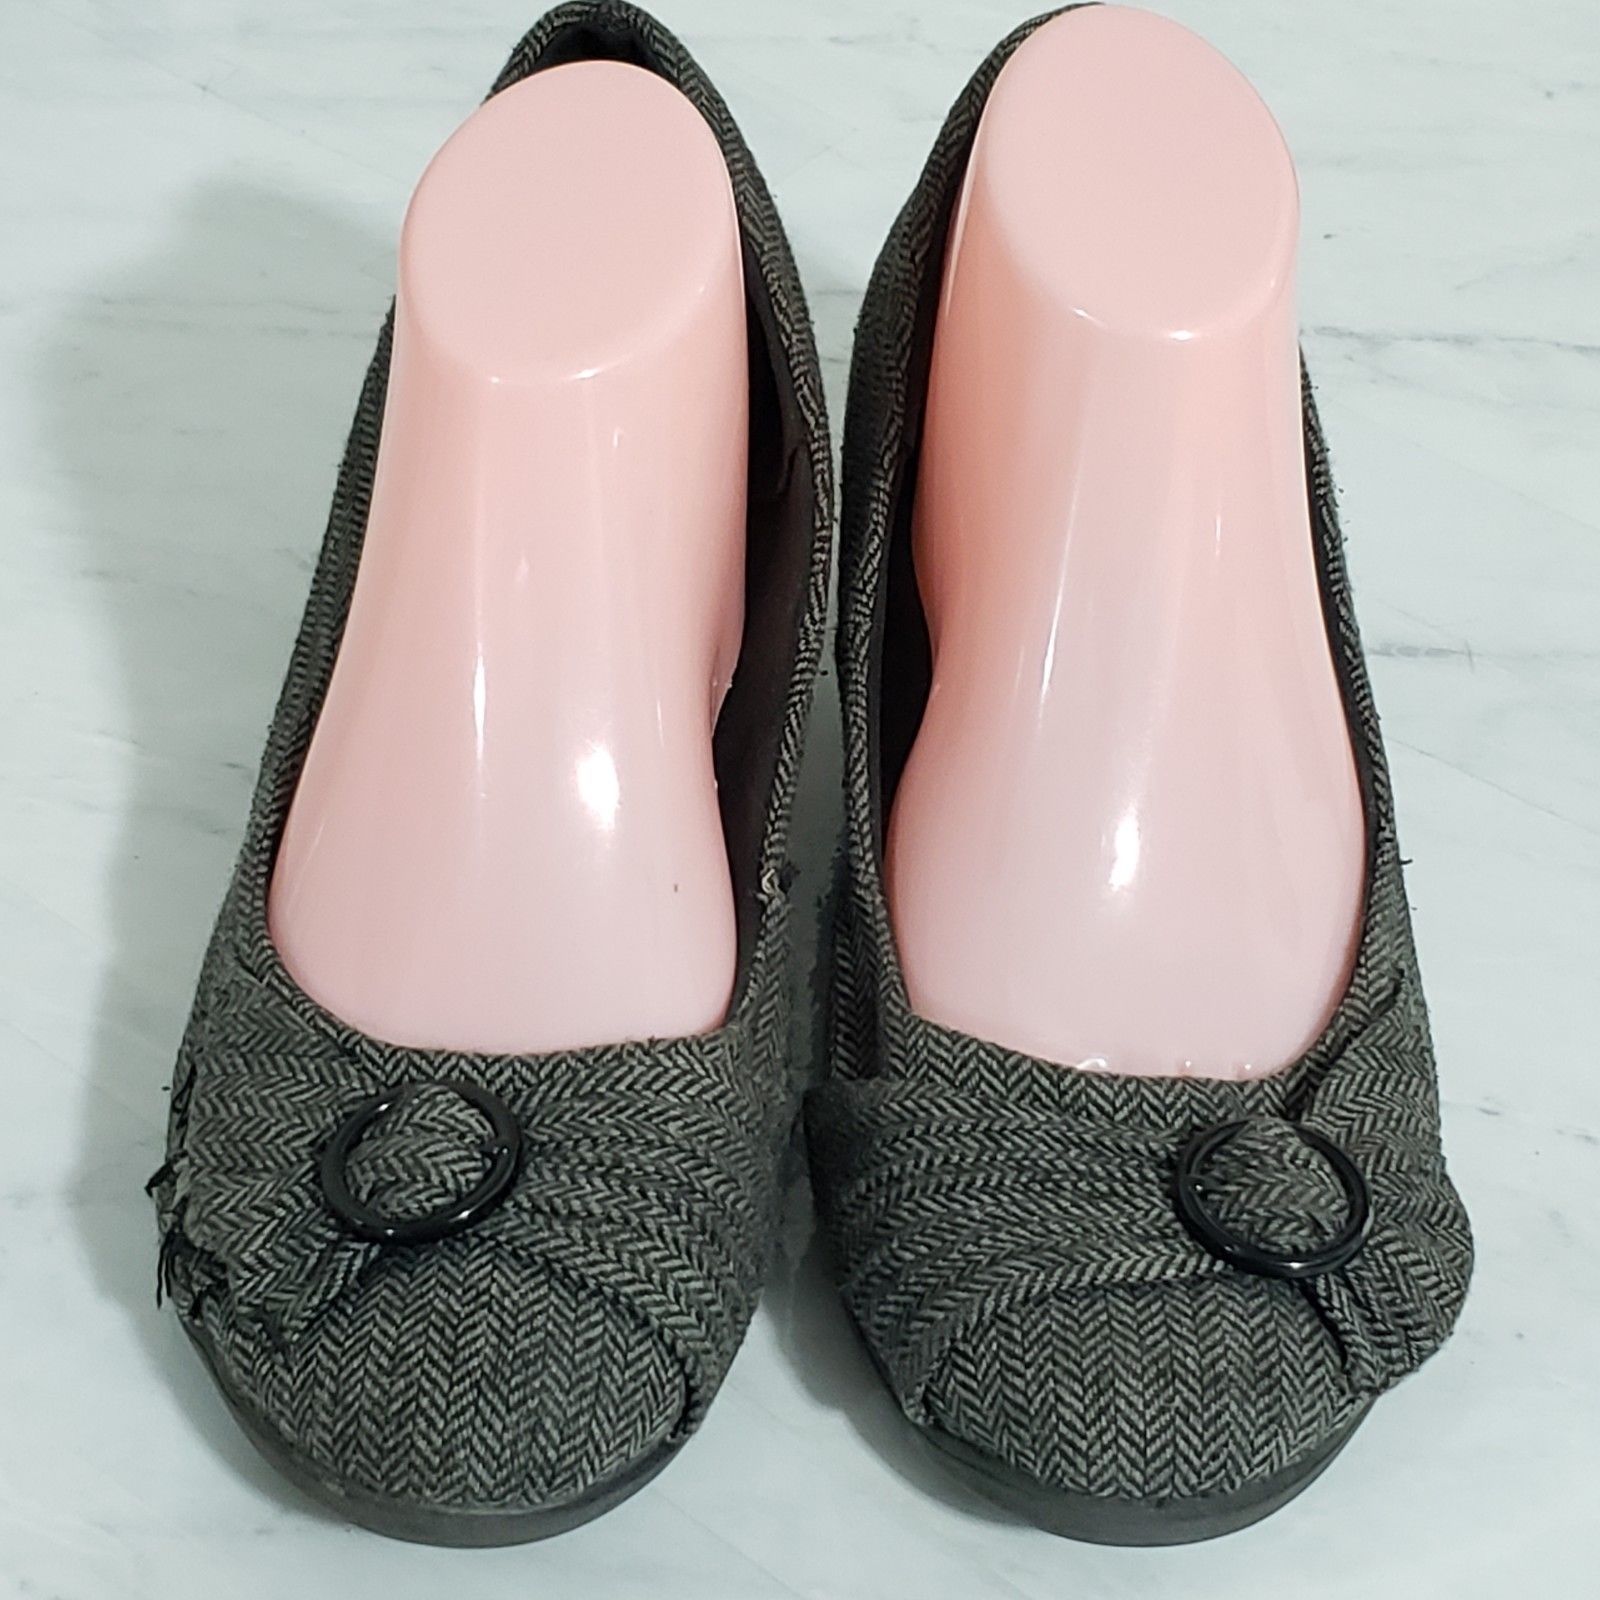 Women’s Deflex Comfort Shoes Size 10W Gray Wedges Career Mid-Heel - Heels